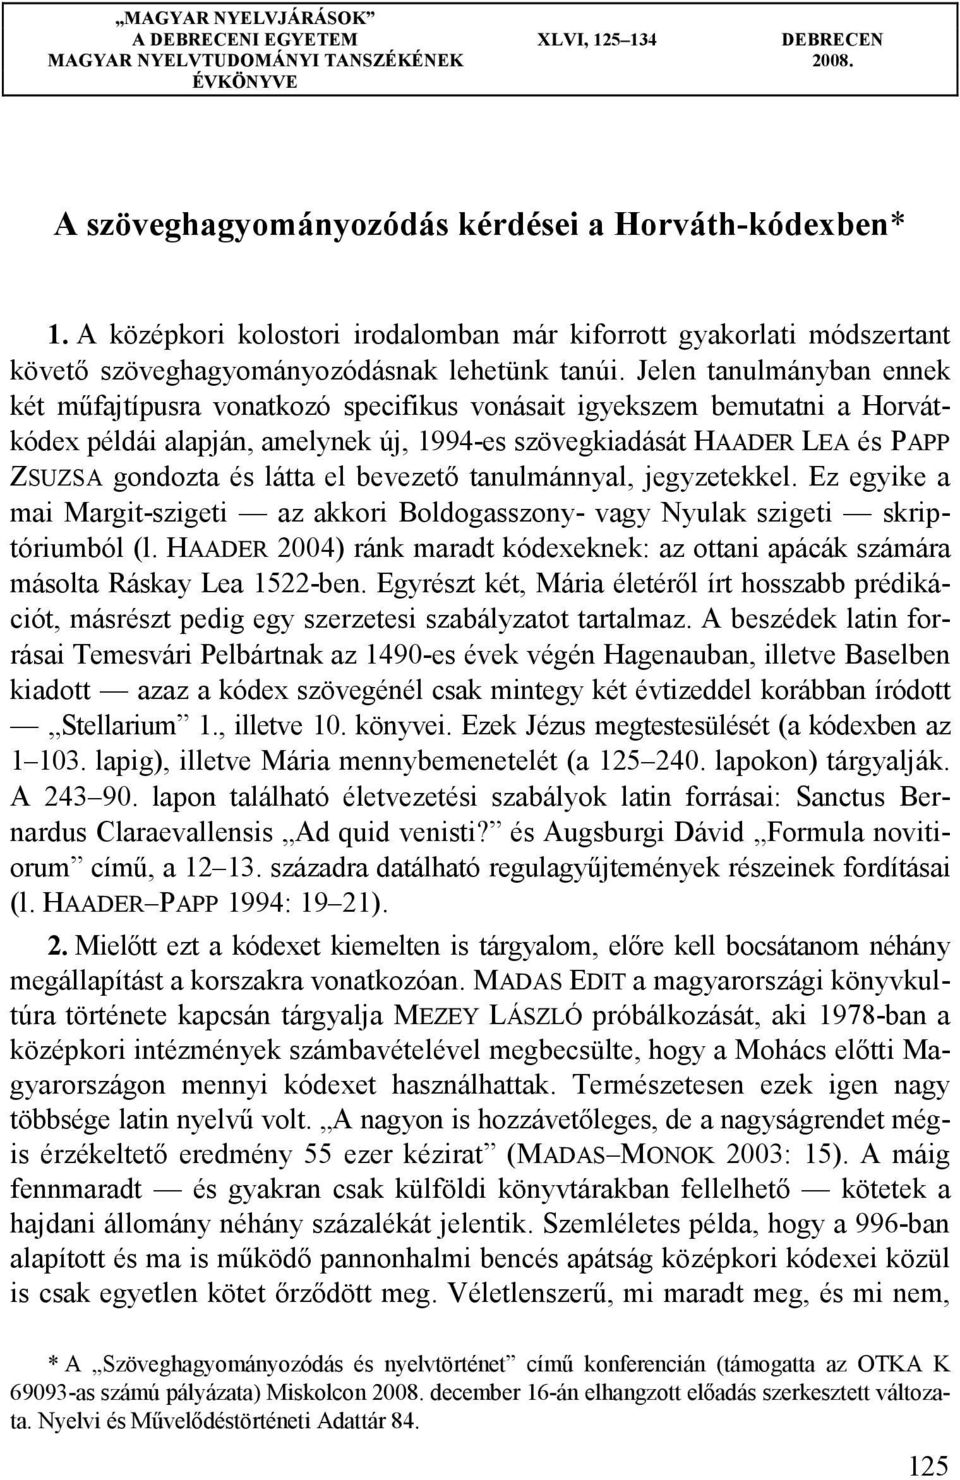 Jelen tanulmányban ennek két műfajtípusra vonatkozó specifikus vonásait igyekszem bemutatni a Horvátkódex példái alapján, amelynek új, 1994-es szövegkiadását HAADER LEA és PAPP ZSUZSA gondozta és